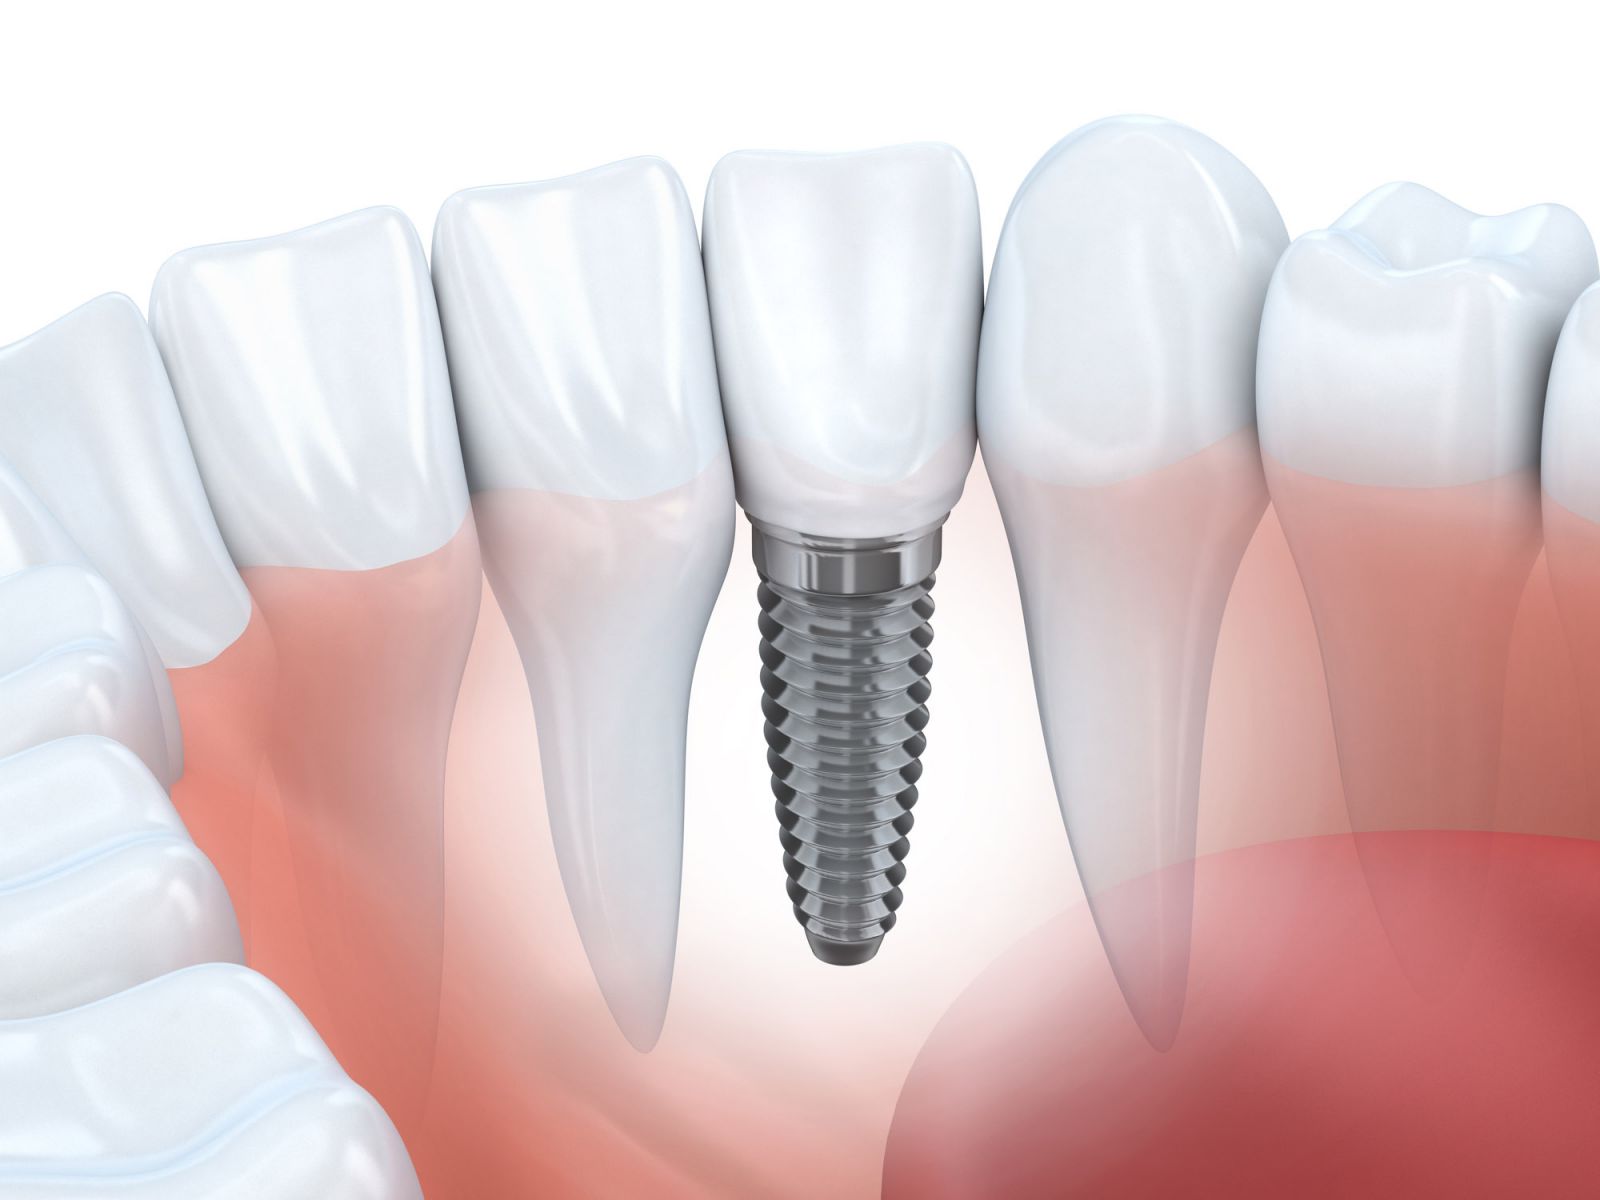 Trường hợp nào nên trồng Implant cho răng